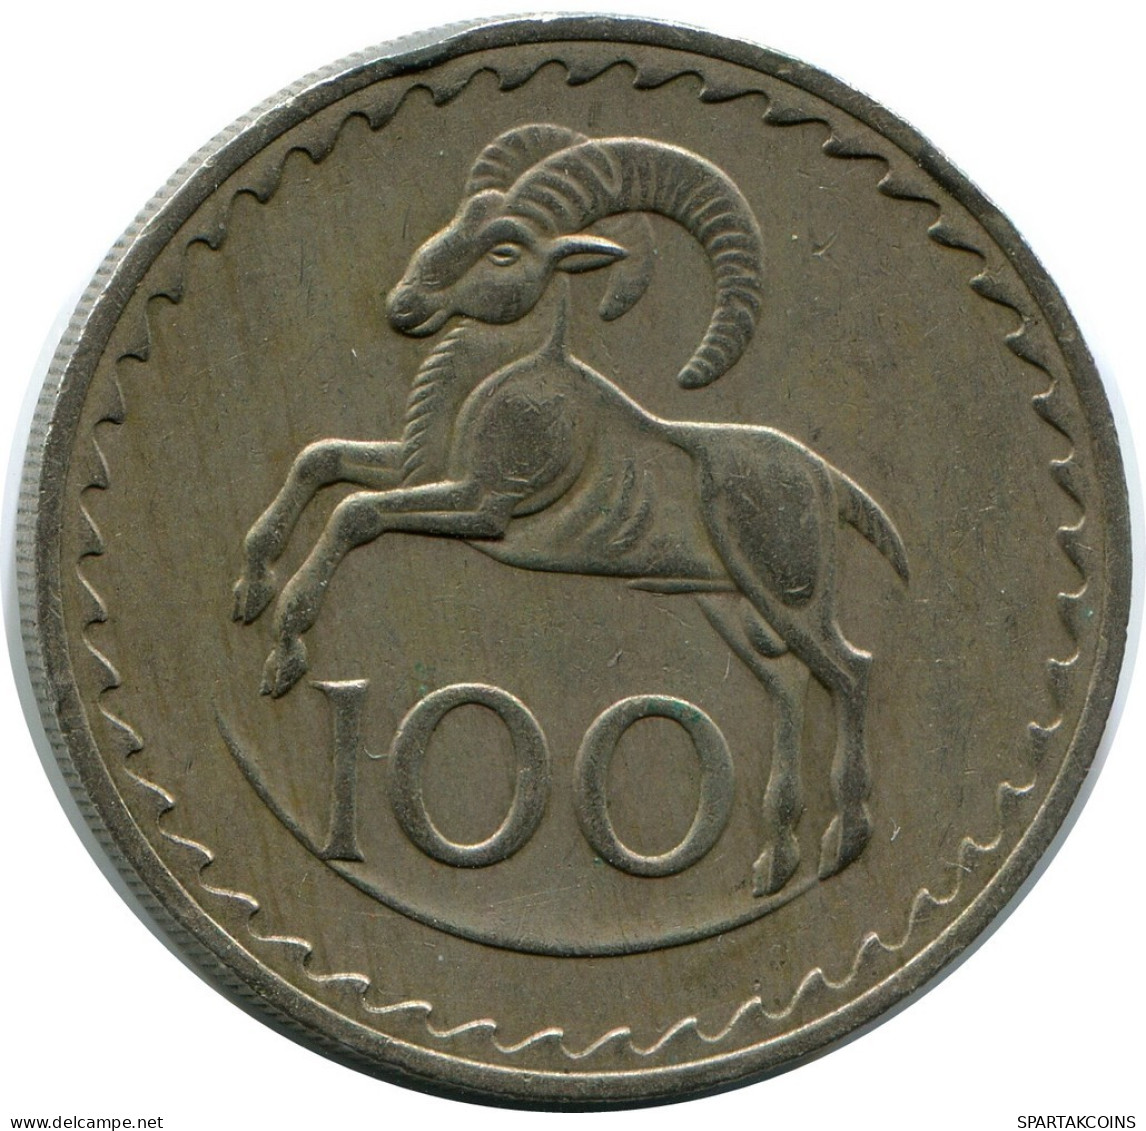 100 MILS 1974 CYPRUS Coin #AP277.U.A - Zypern